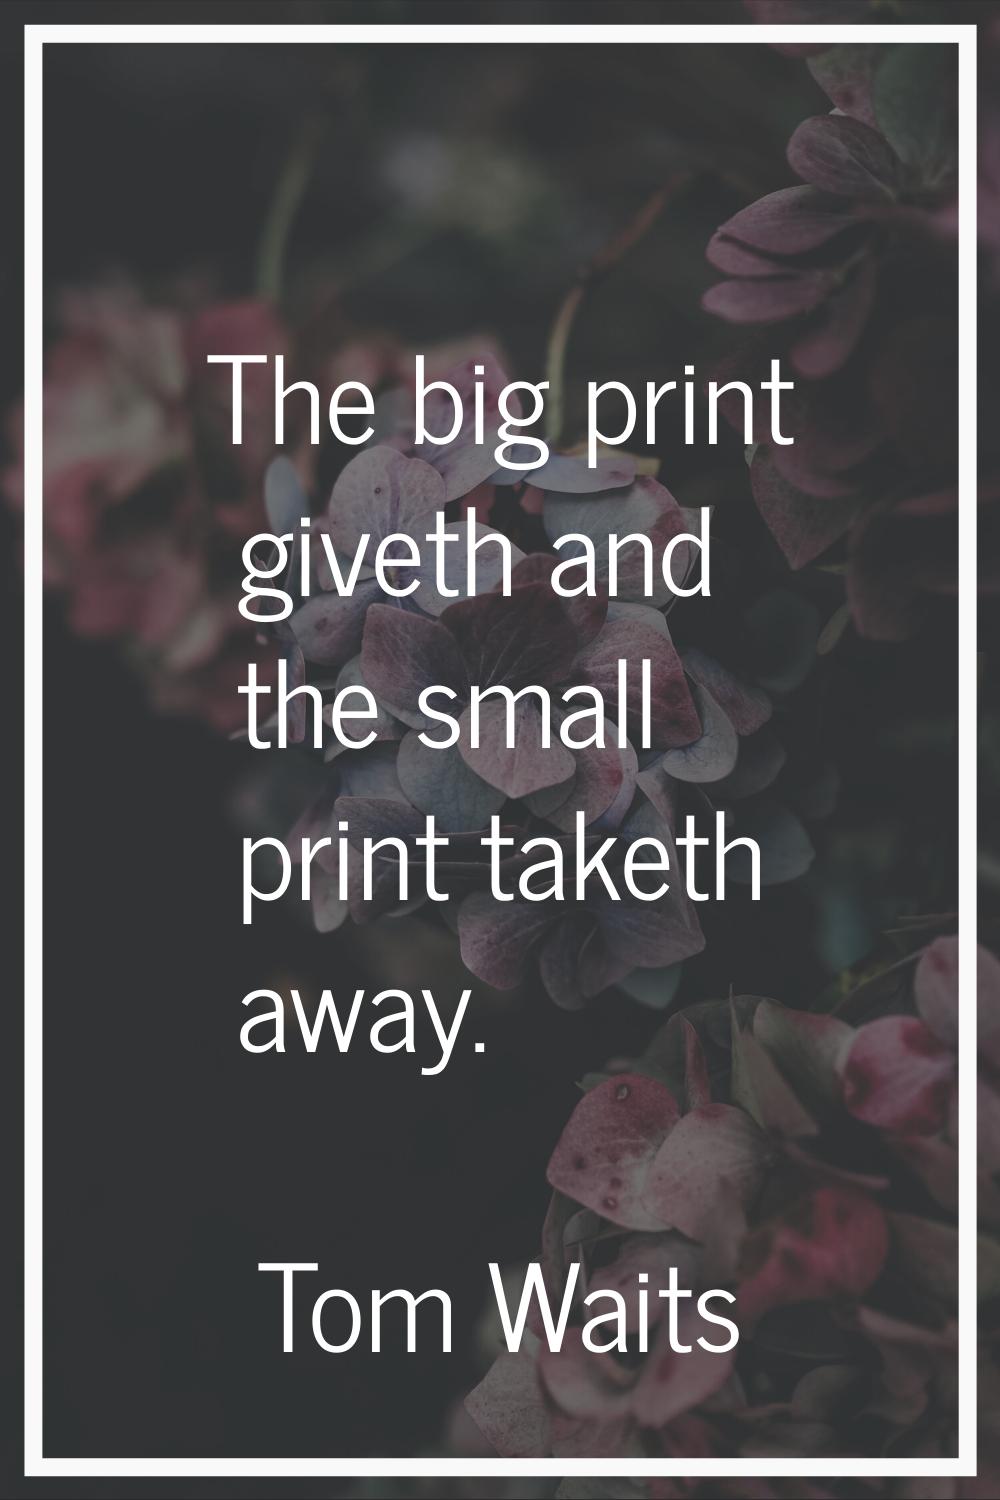 The big print giveth and the small print taketh away.